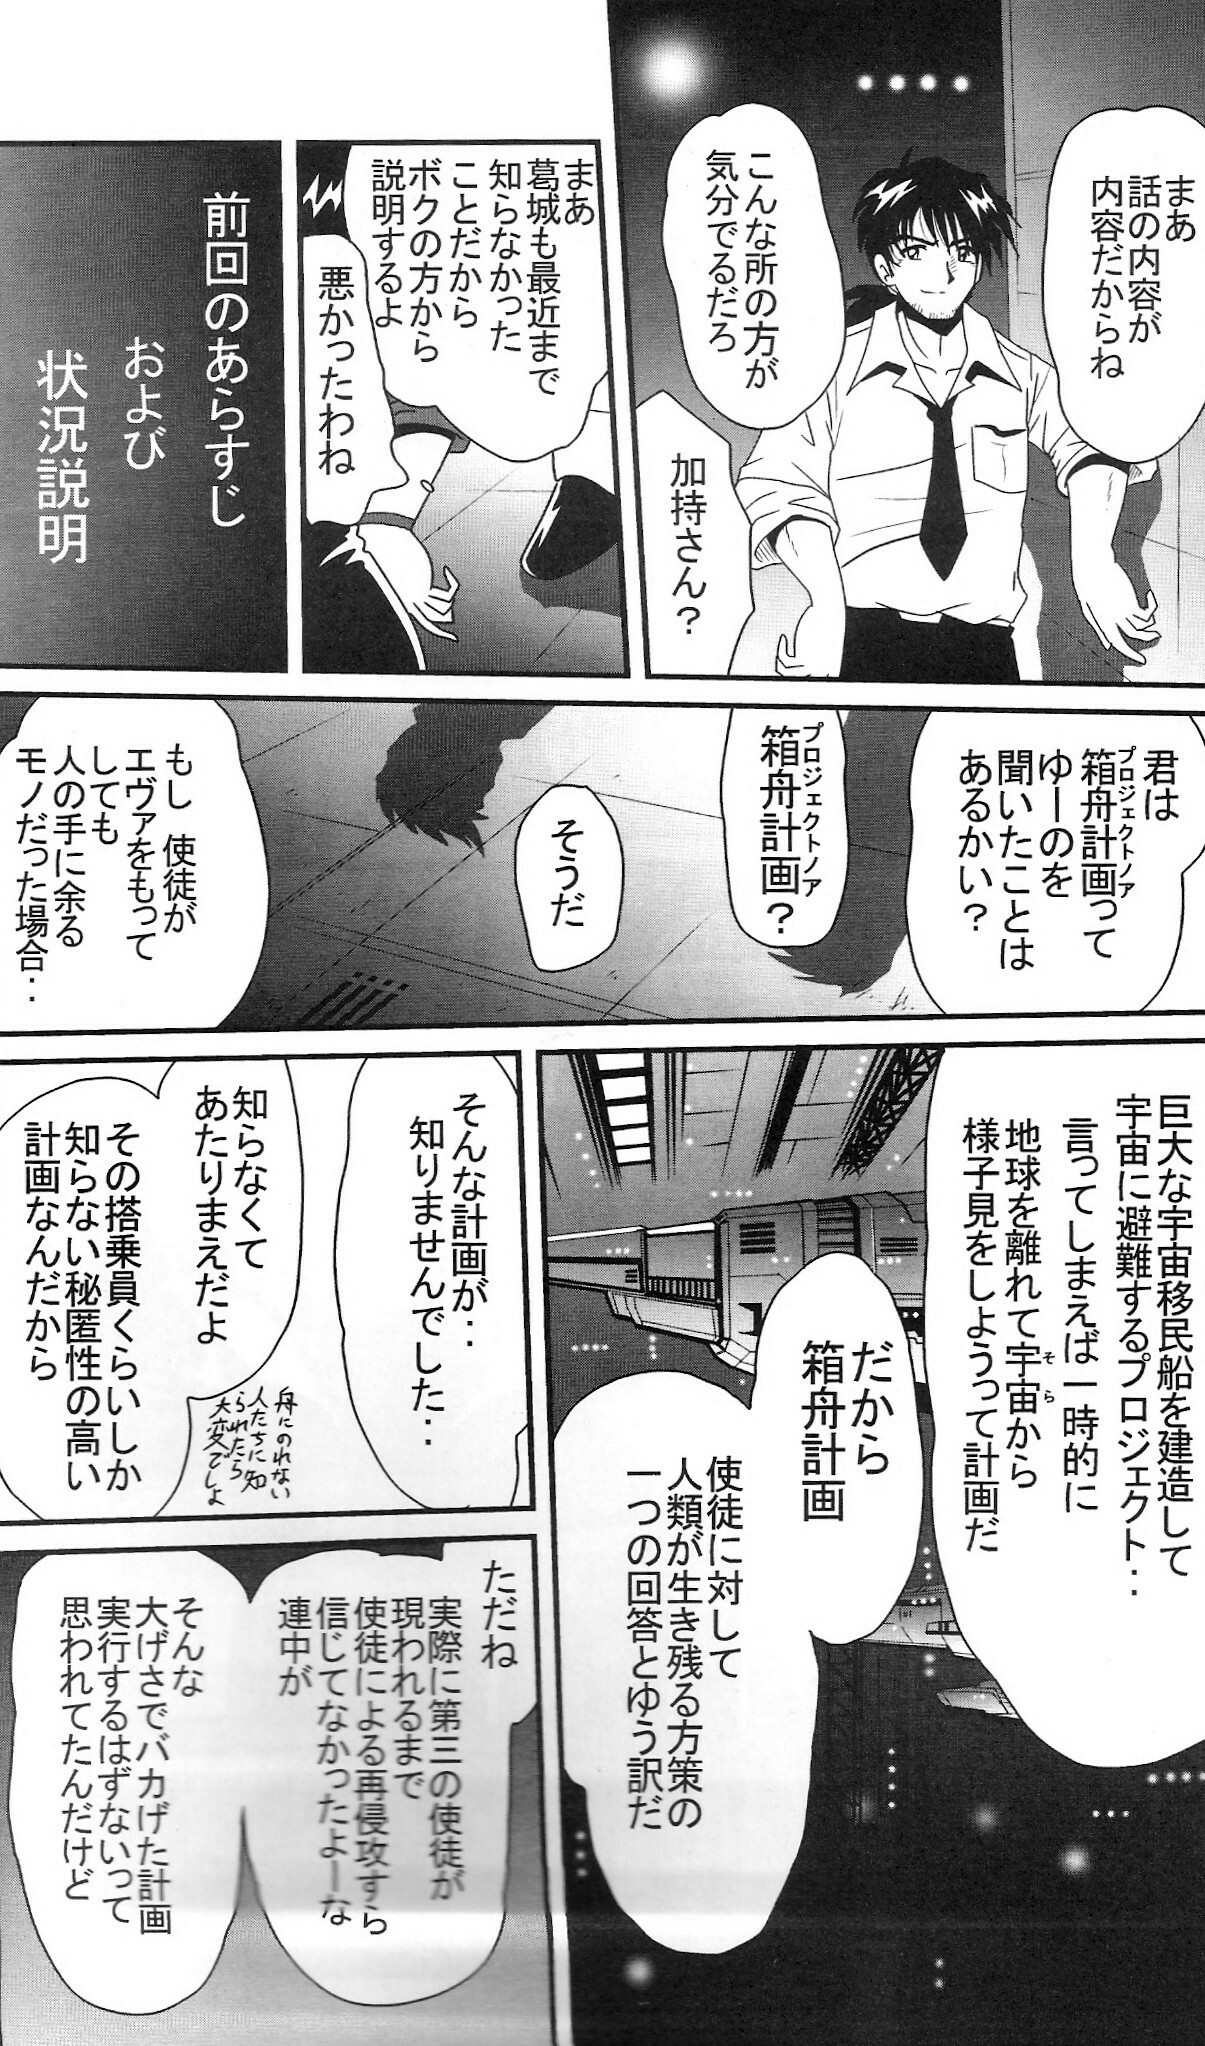 (COMIC1) [Thirty Saver Street 2D Shooting (Maki Hideto, Sawara Kazumitsu, Yonige-ya No Kyou)] Second Uchuu Keikaku 2 (Neon Genesis Evangelion) page 8 full